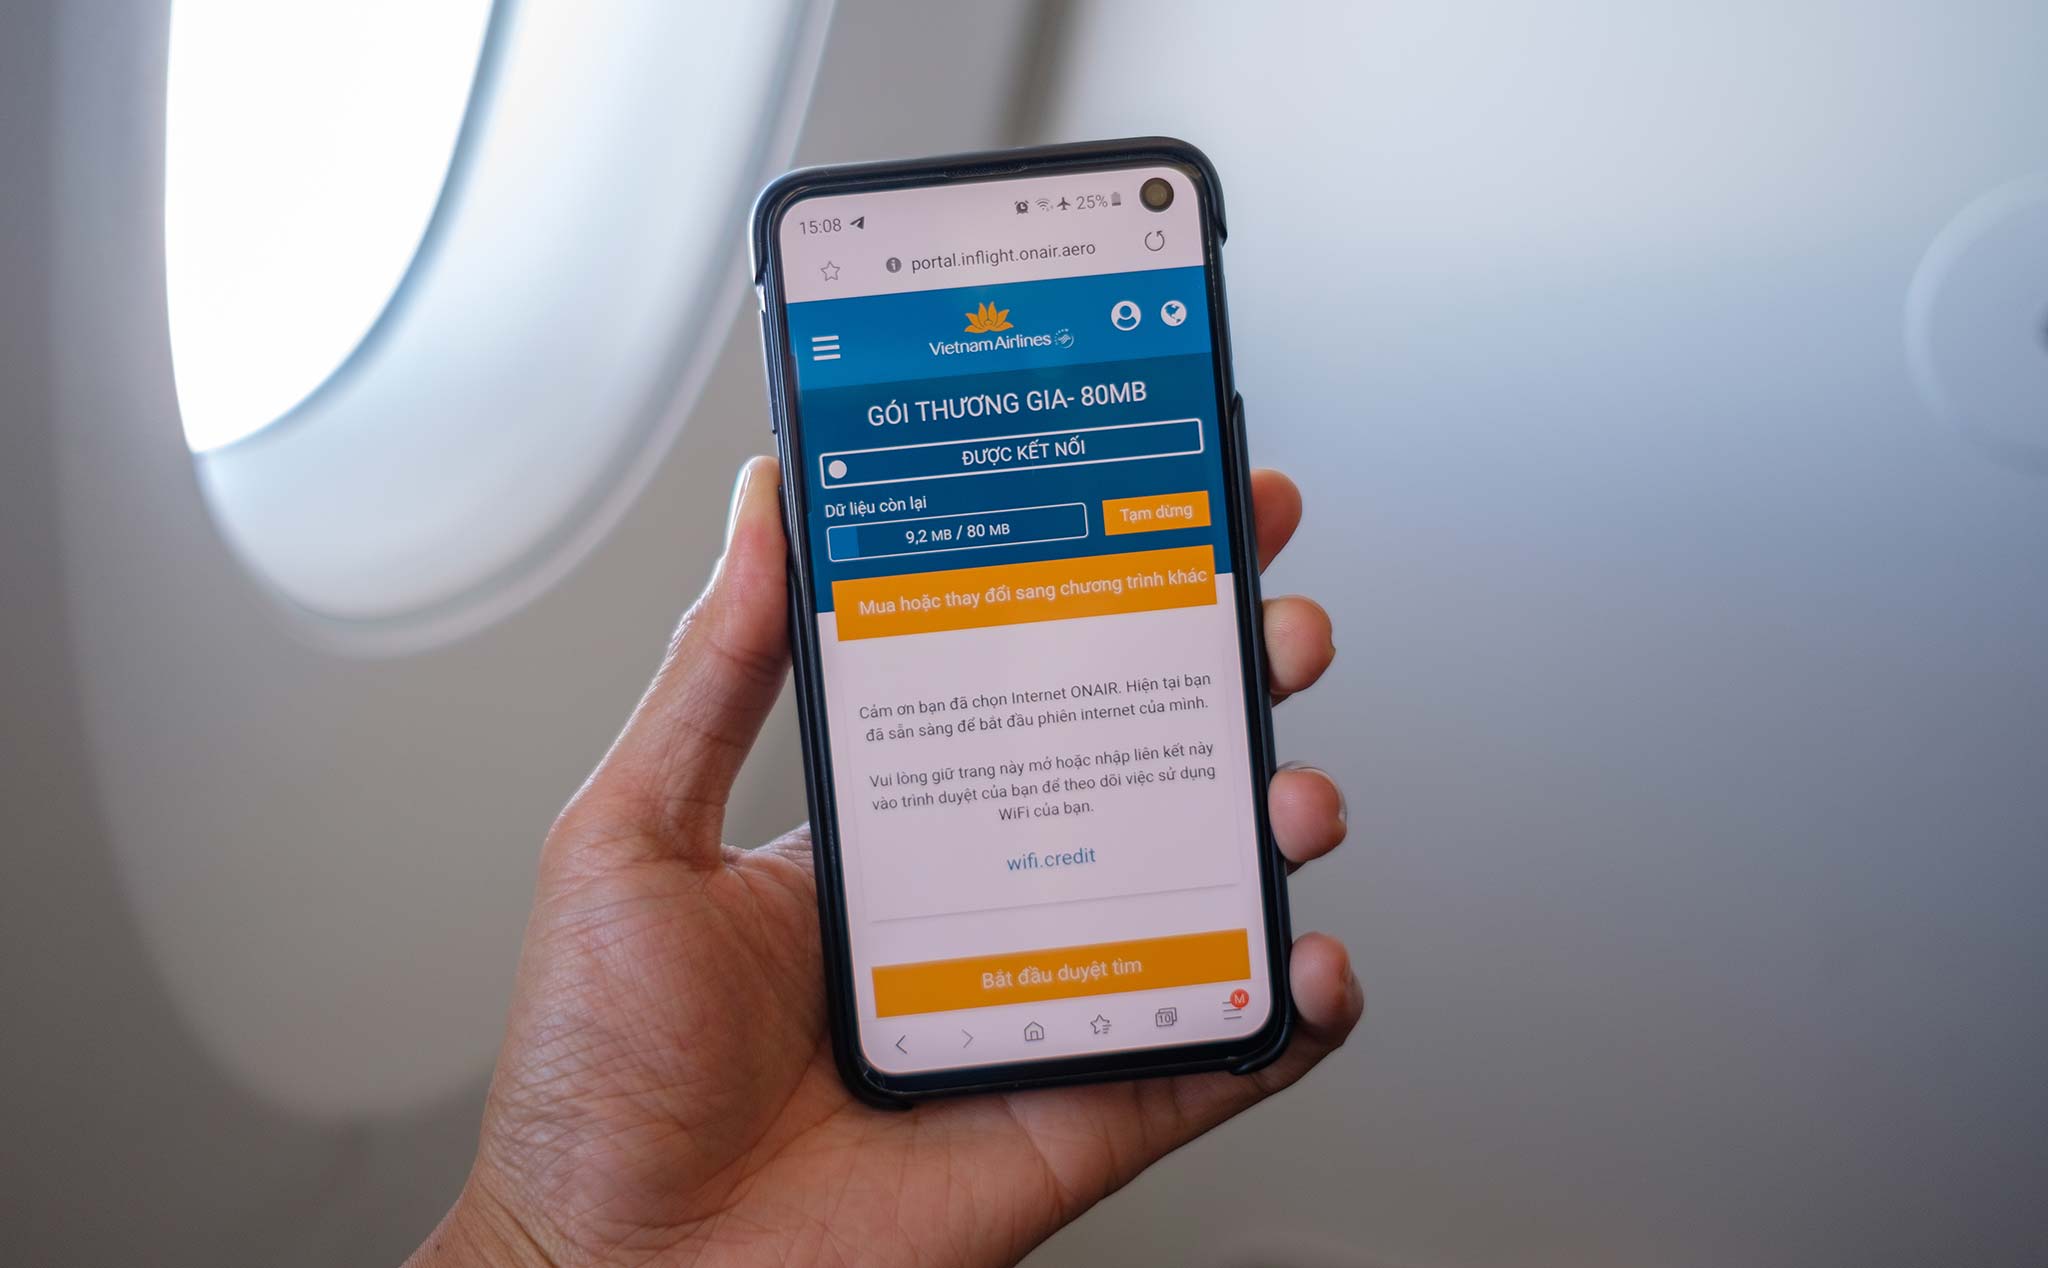 Trải nghiệm internet trên chuyến bay của Vietnam Airlines: mới đủ dùng để nhắn tin, gửi mail